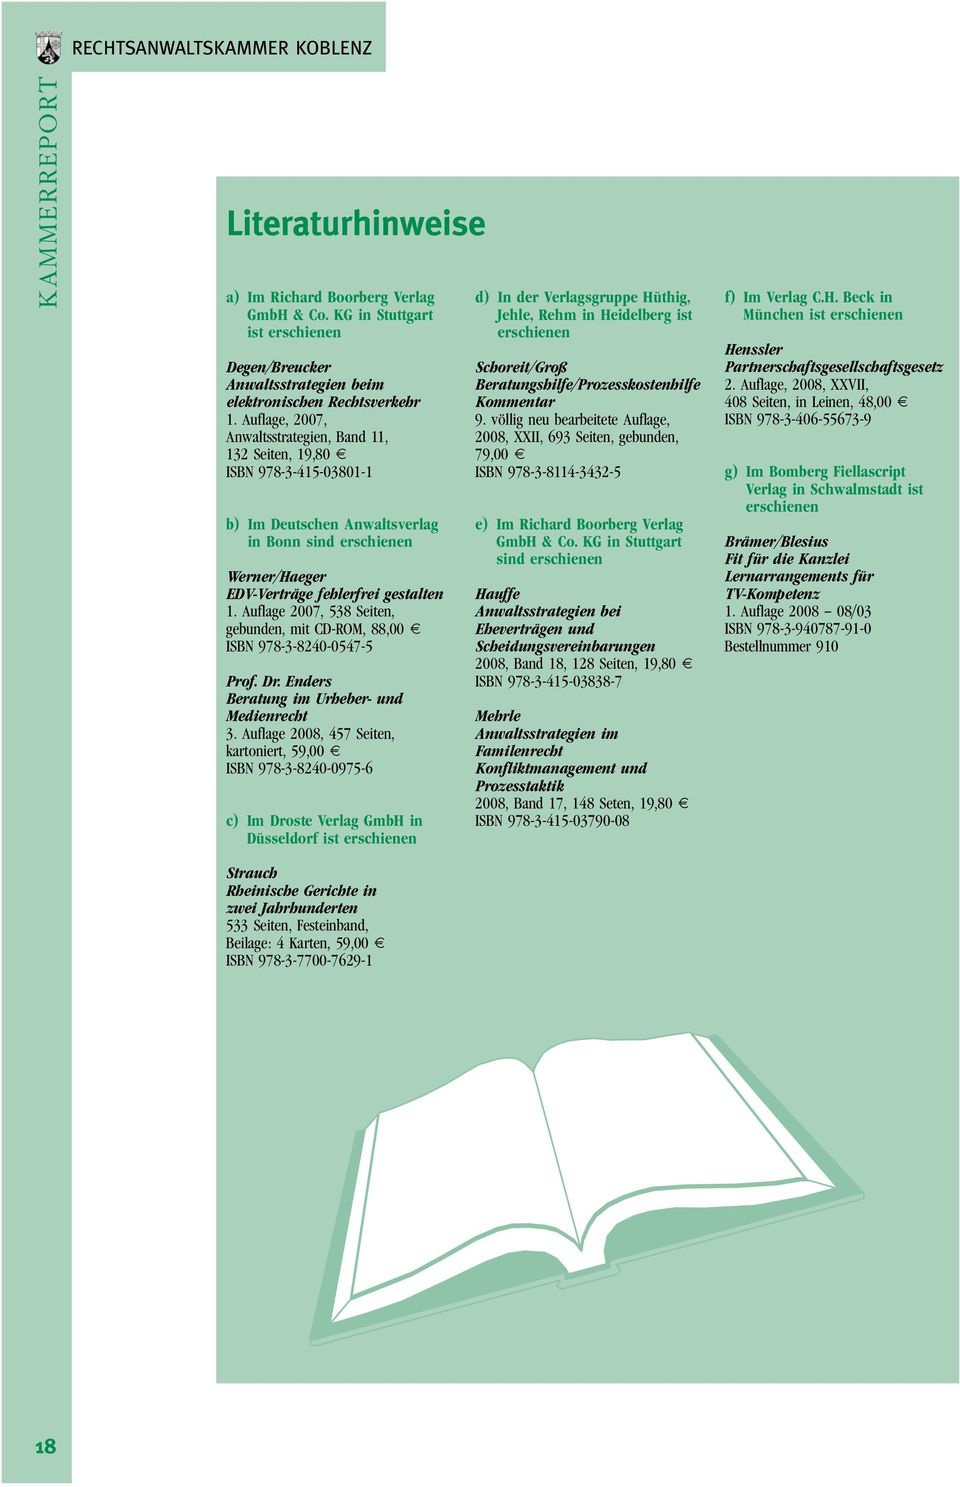 Auflage 2007, 538 Seiten, gebunden, mit CD-ROM, 88,00 E ISBN 978-3-8240-0547-5 Prof. Dr. Enders Beratung im Urheber- und Medienrecht 3.